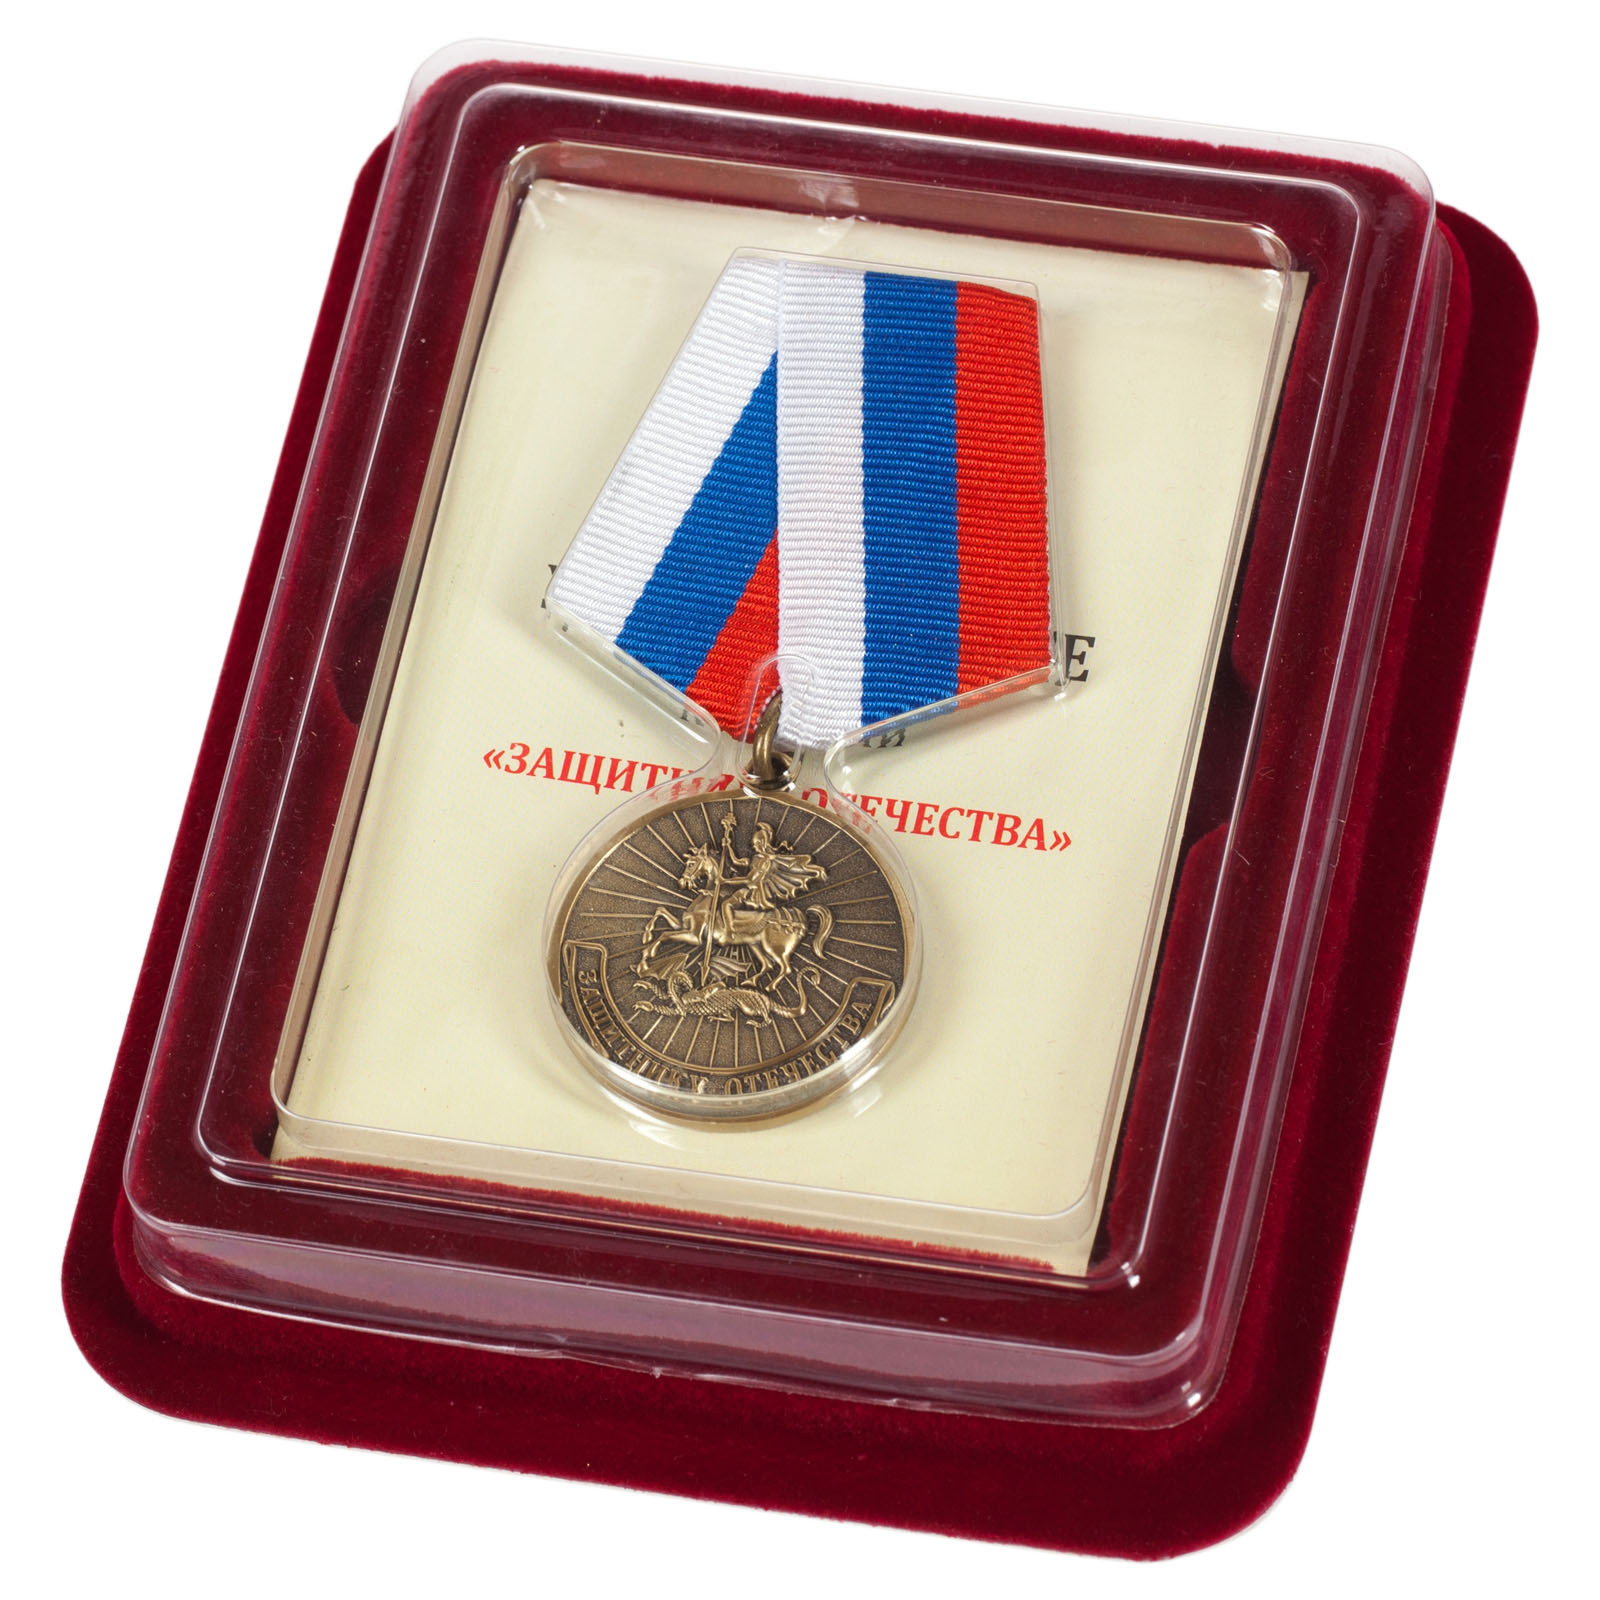 Купить медаль "Защитнику Отечества" в подарочном футляре